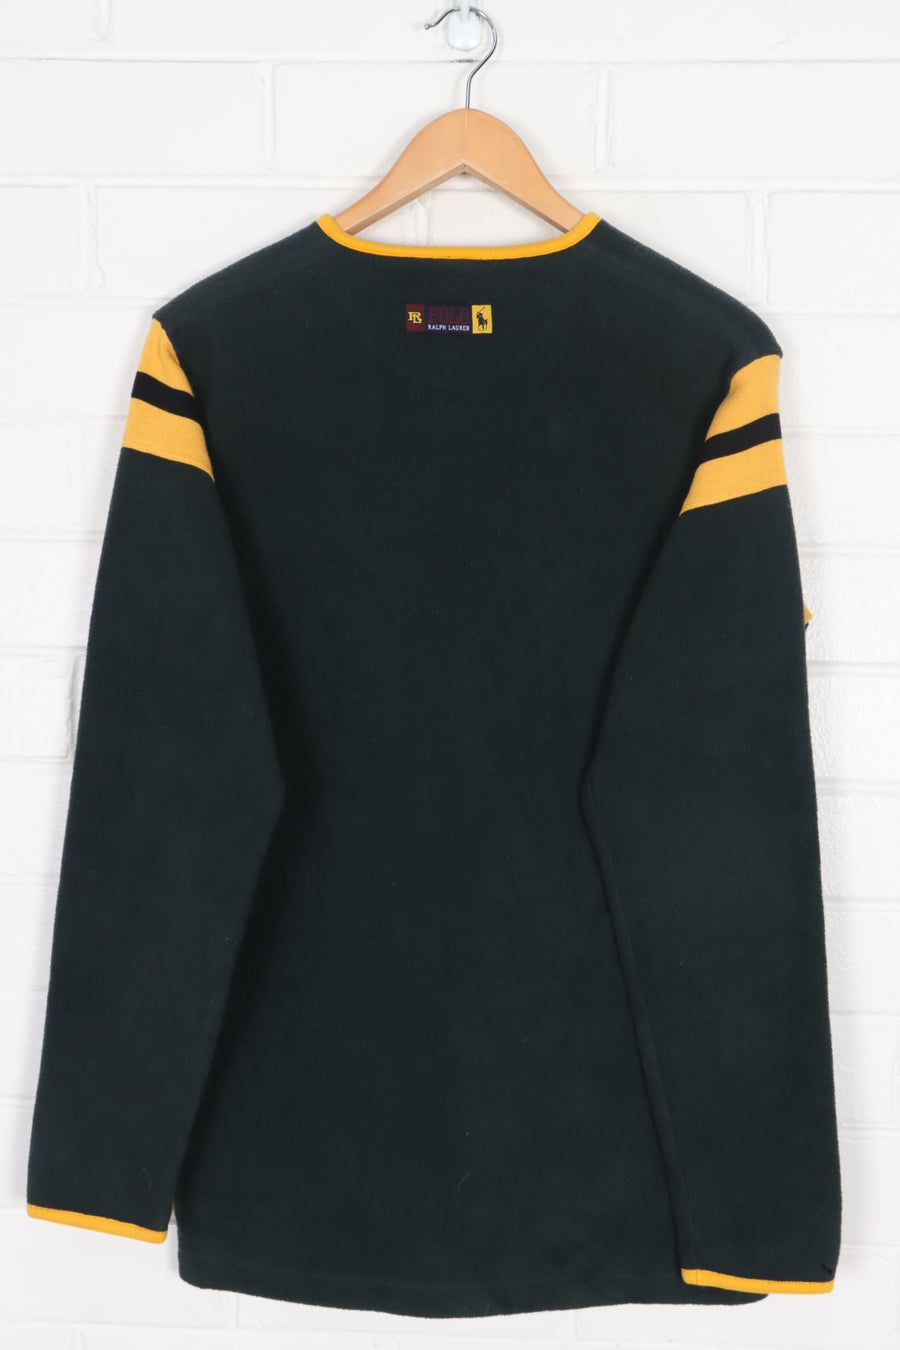 RALPH LAUREN POLO Green & Gold Henley Fleece Sweatshirt (S)